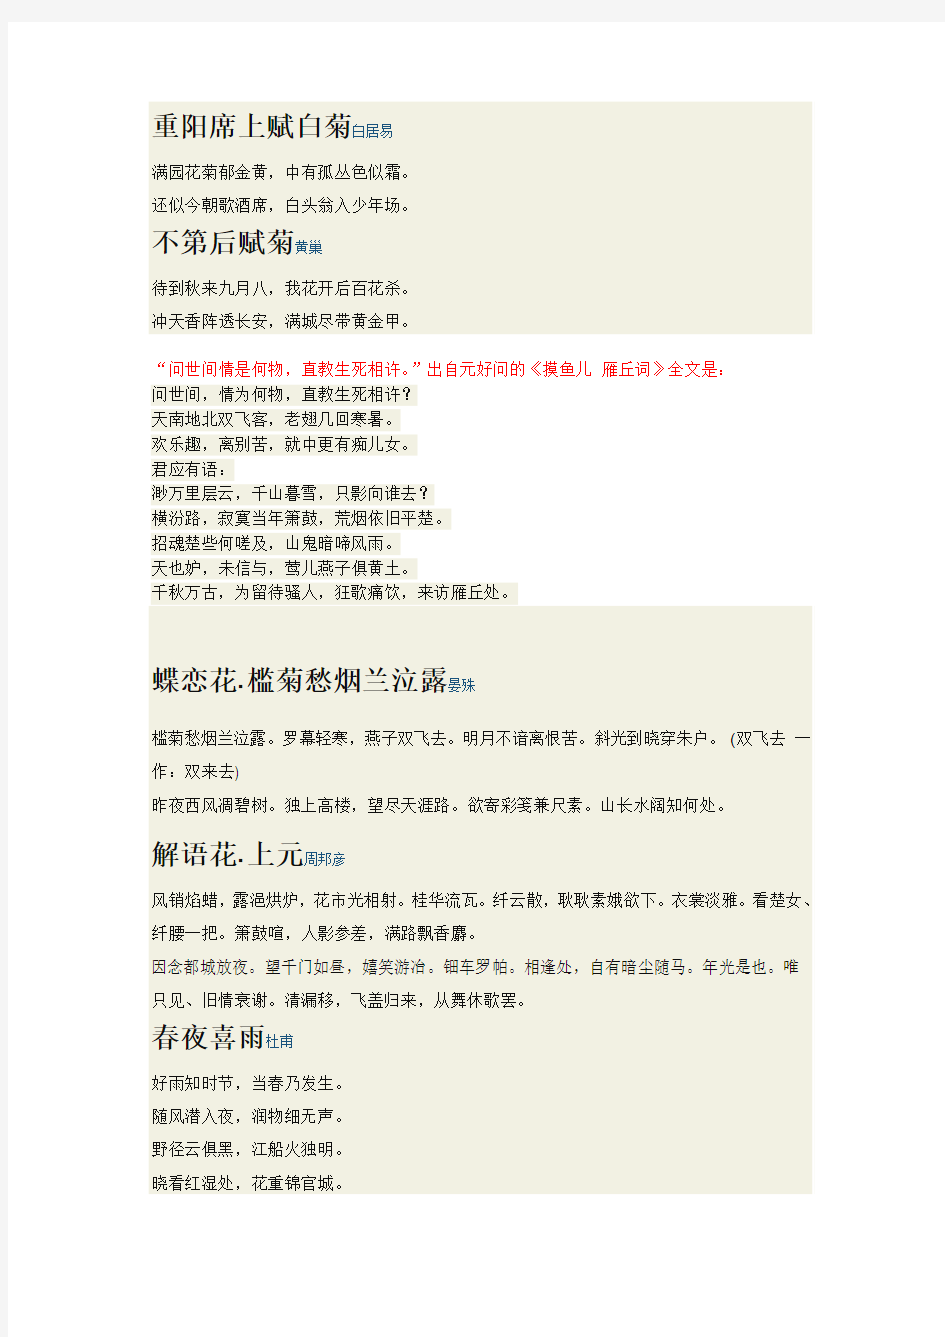 中华好诗词20131109第一季4期涉及诗词